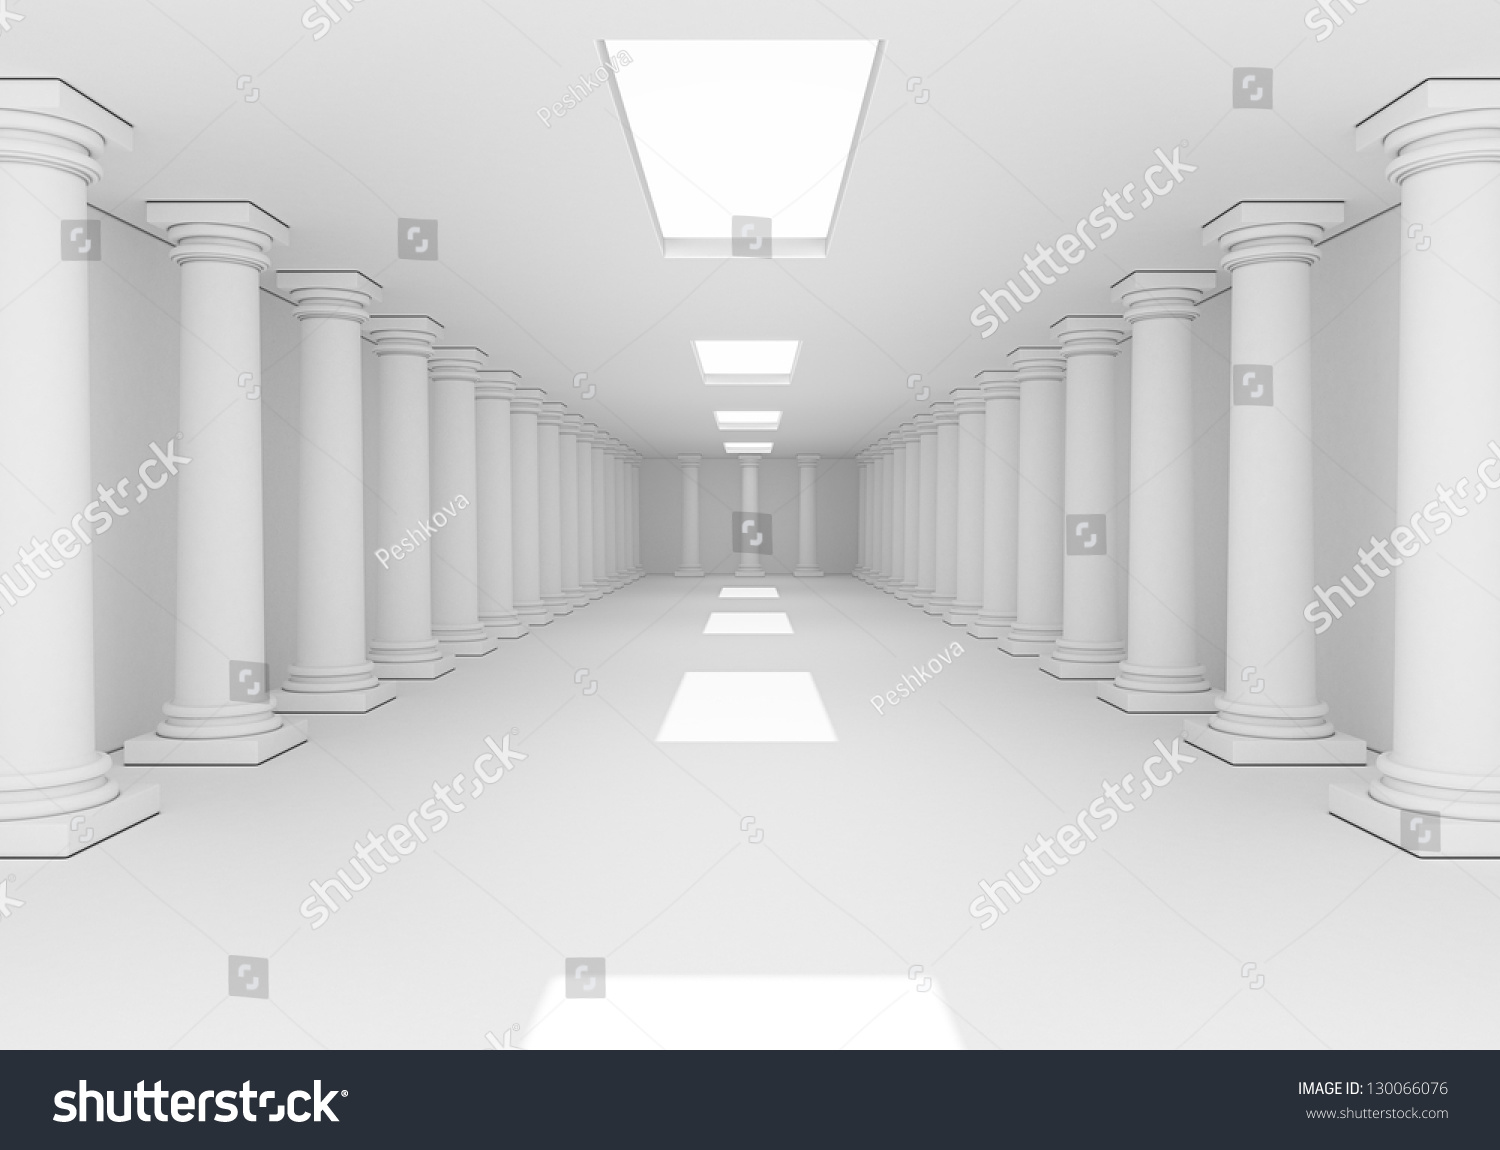 Вид помещения с колоннами 2 д